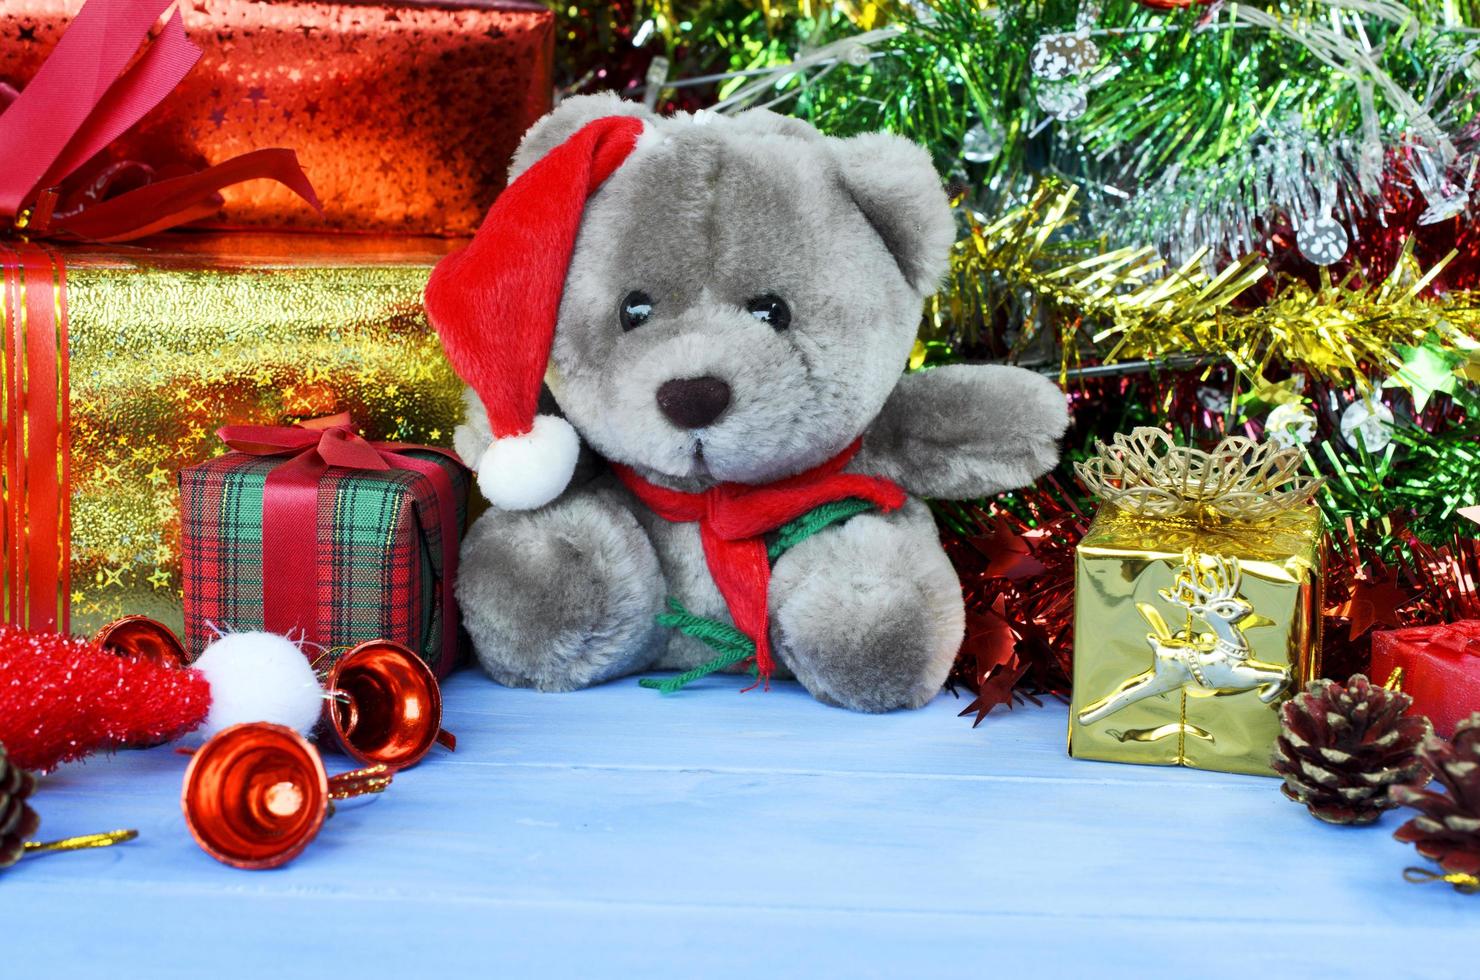 Muñeco de peluche con gorro de Papá Noel y fondos de adornos navideños foto